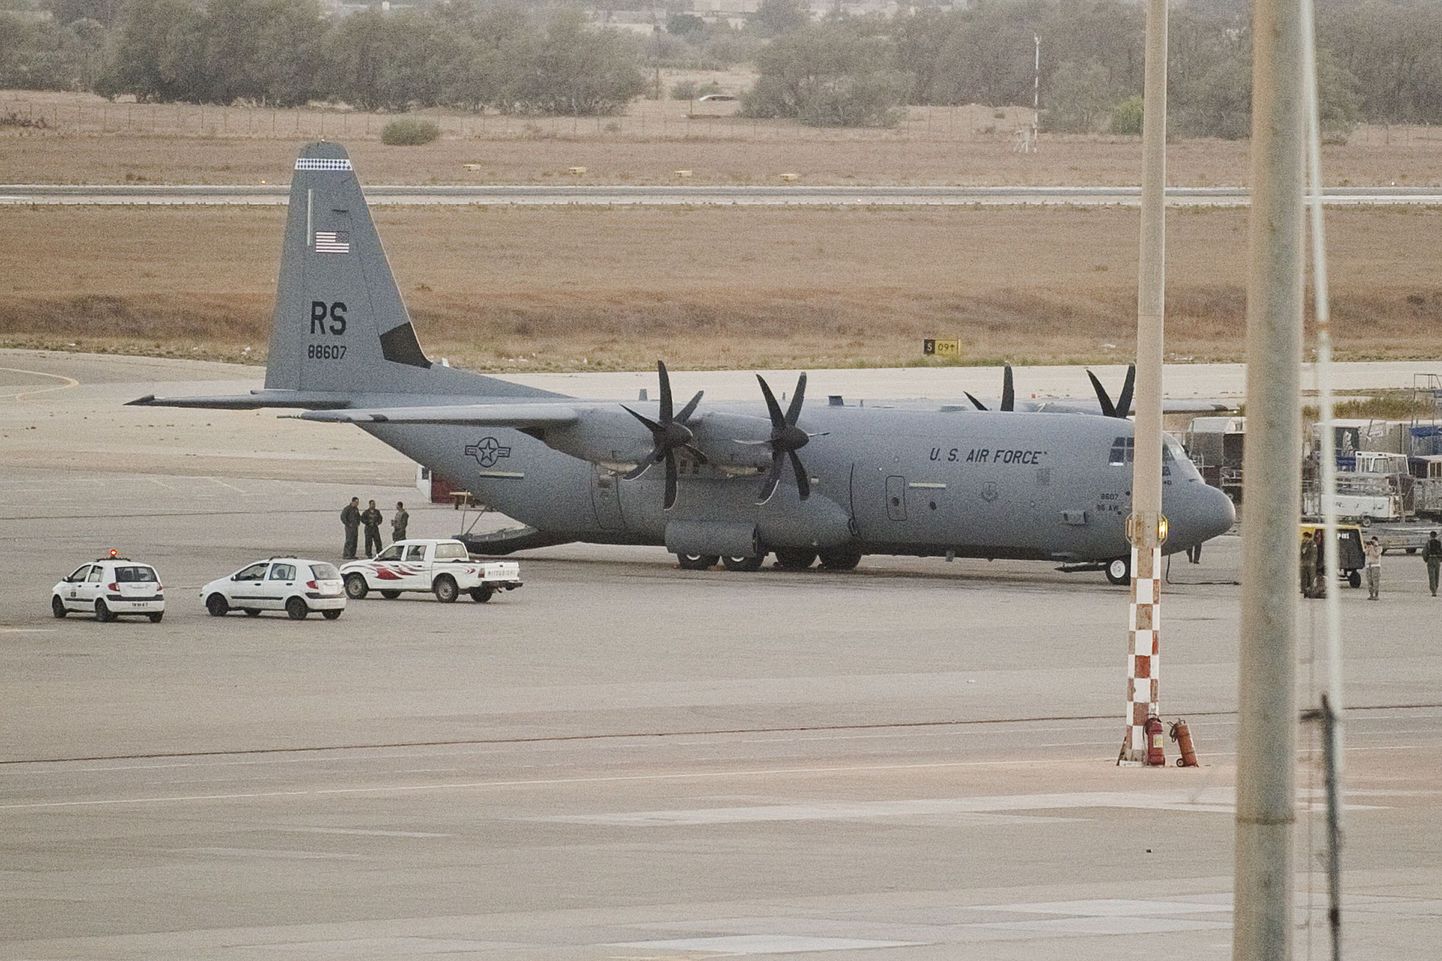 USA lennuväele kuuluv C-130 Hercules Tripoli lennuväljal, kuhu see tõi eriüksuslasi.